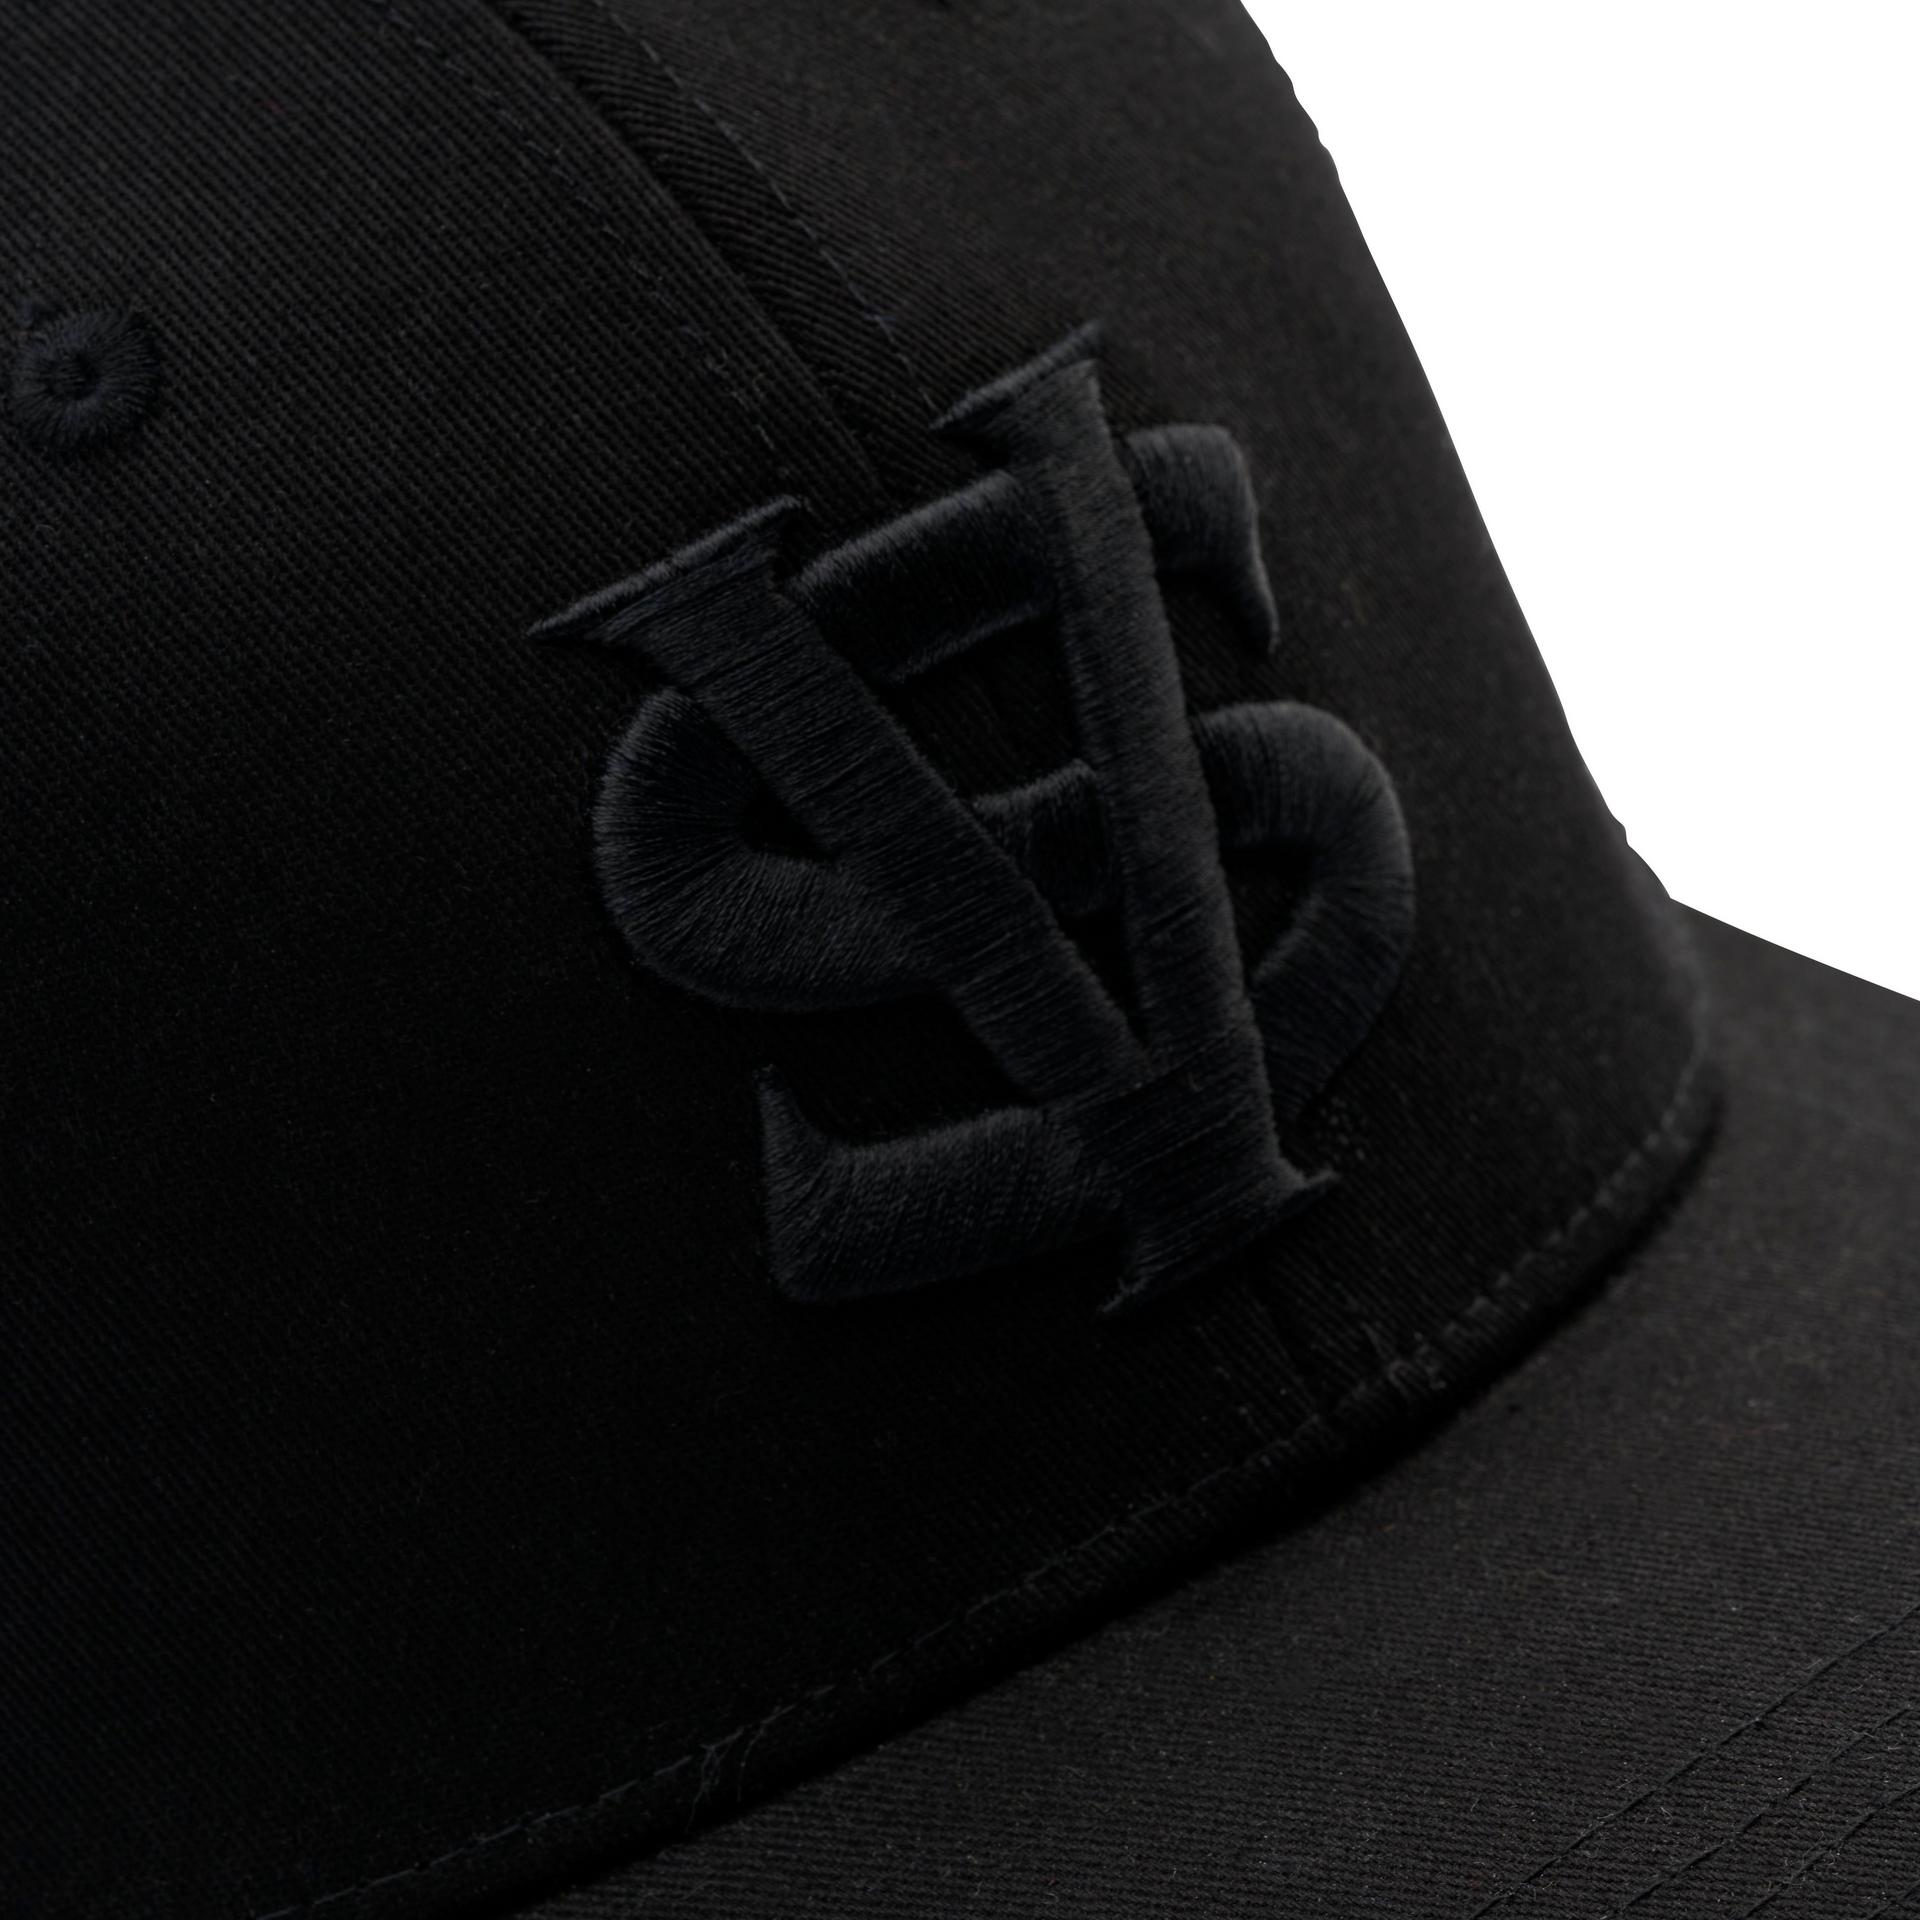 Black Trucker Hat| VAN STAAL® 